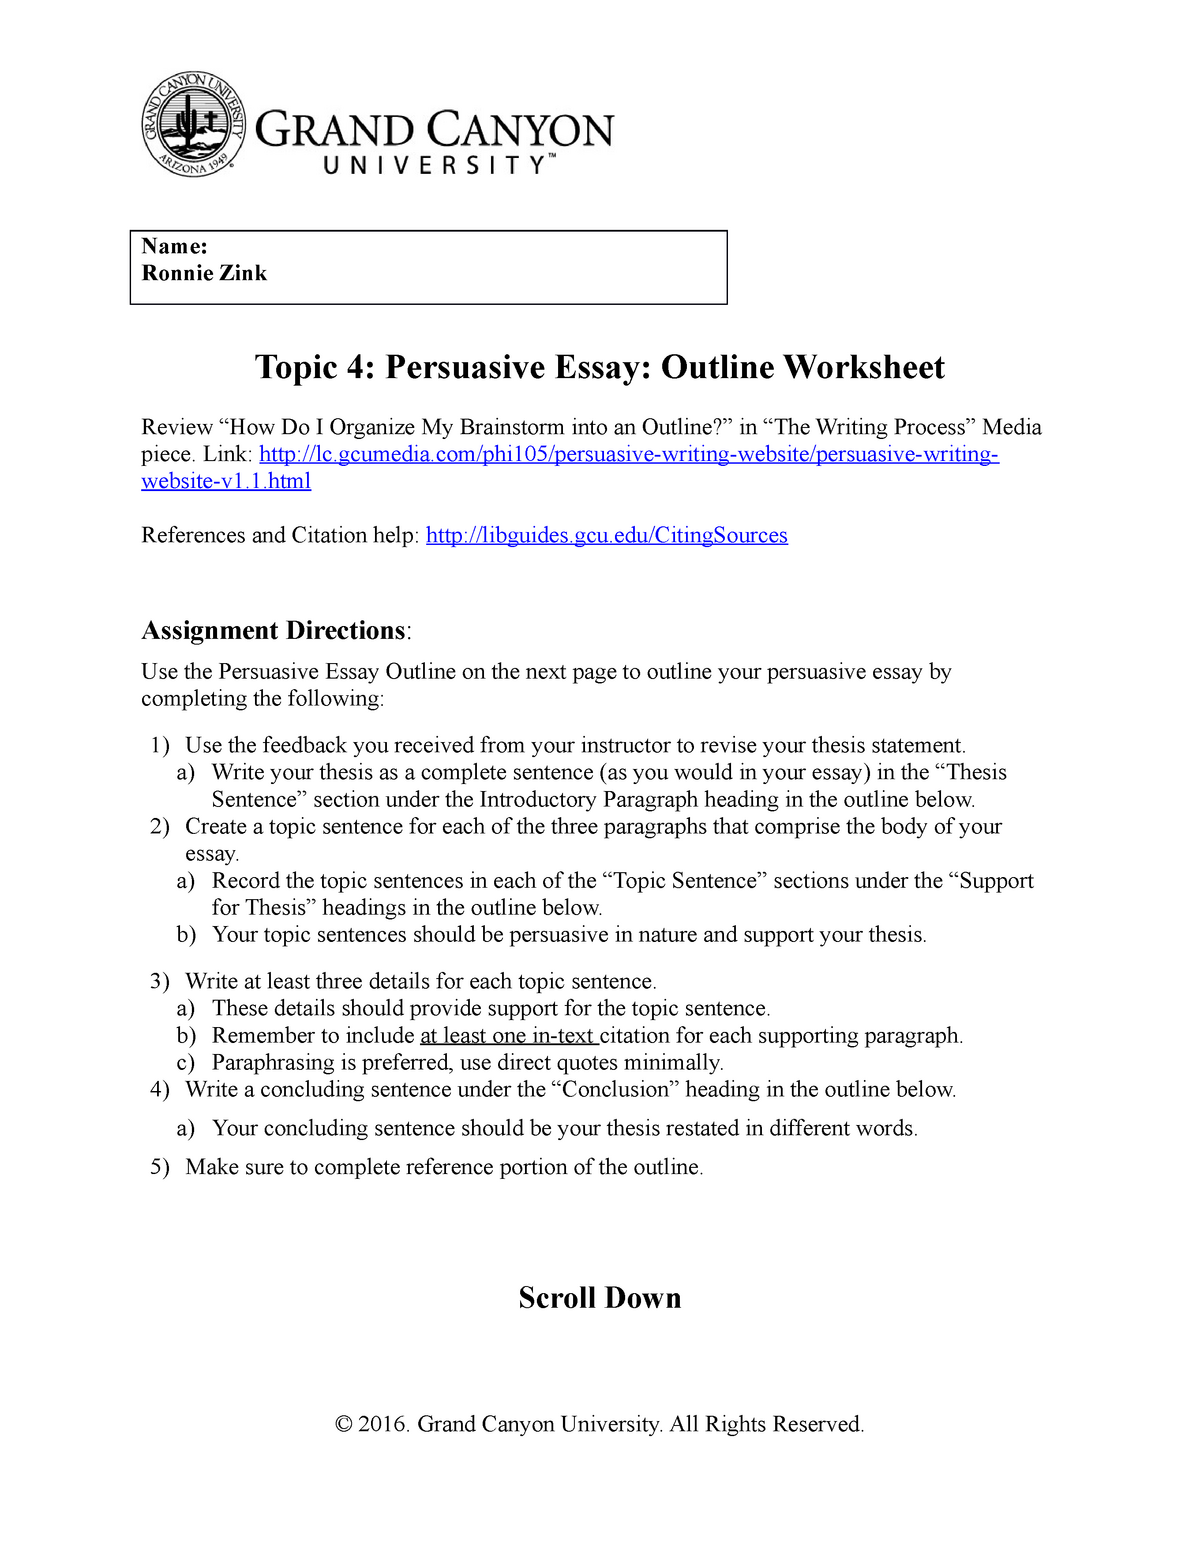 PDF) Task 6.4: Problem-Solution Academic Essay Outline